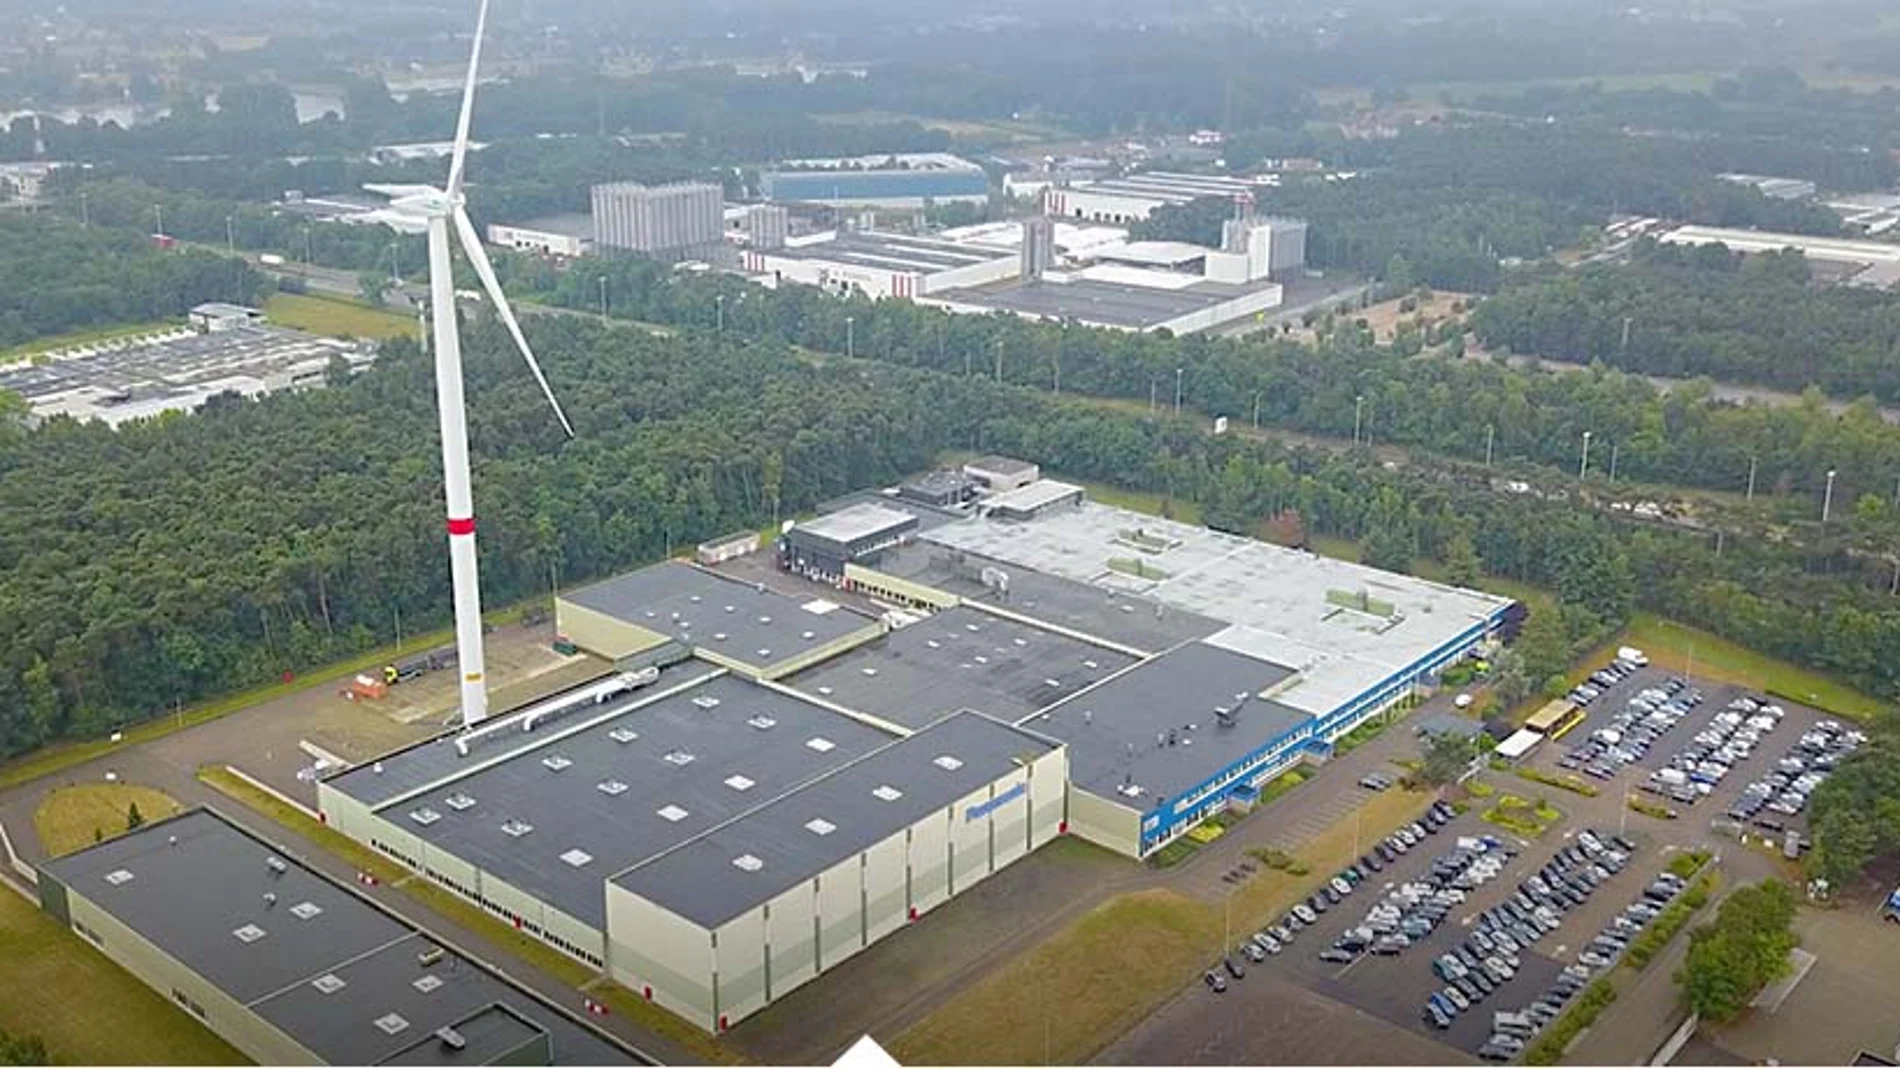 La planta de Tessenderlo (Bélgica) tiene su propio generador eólico de 2 MW desde 2016.